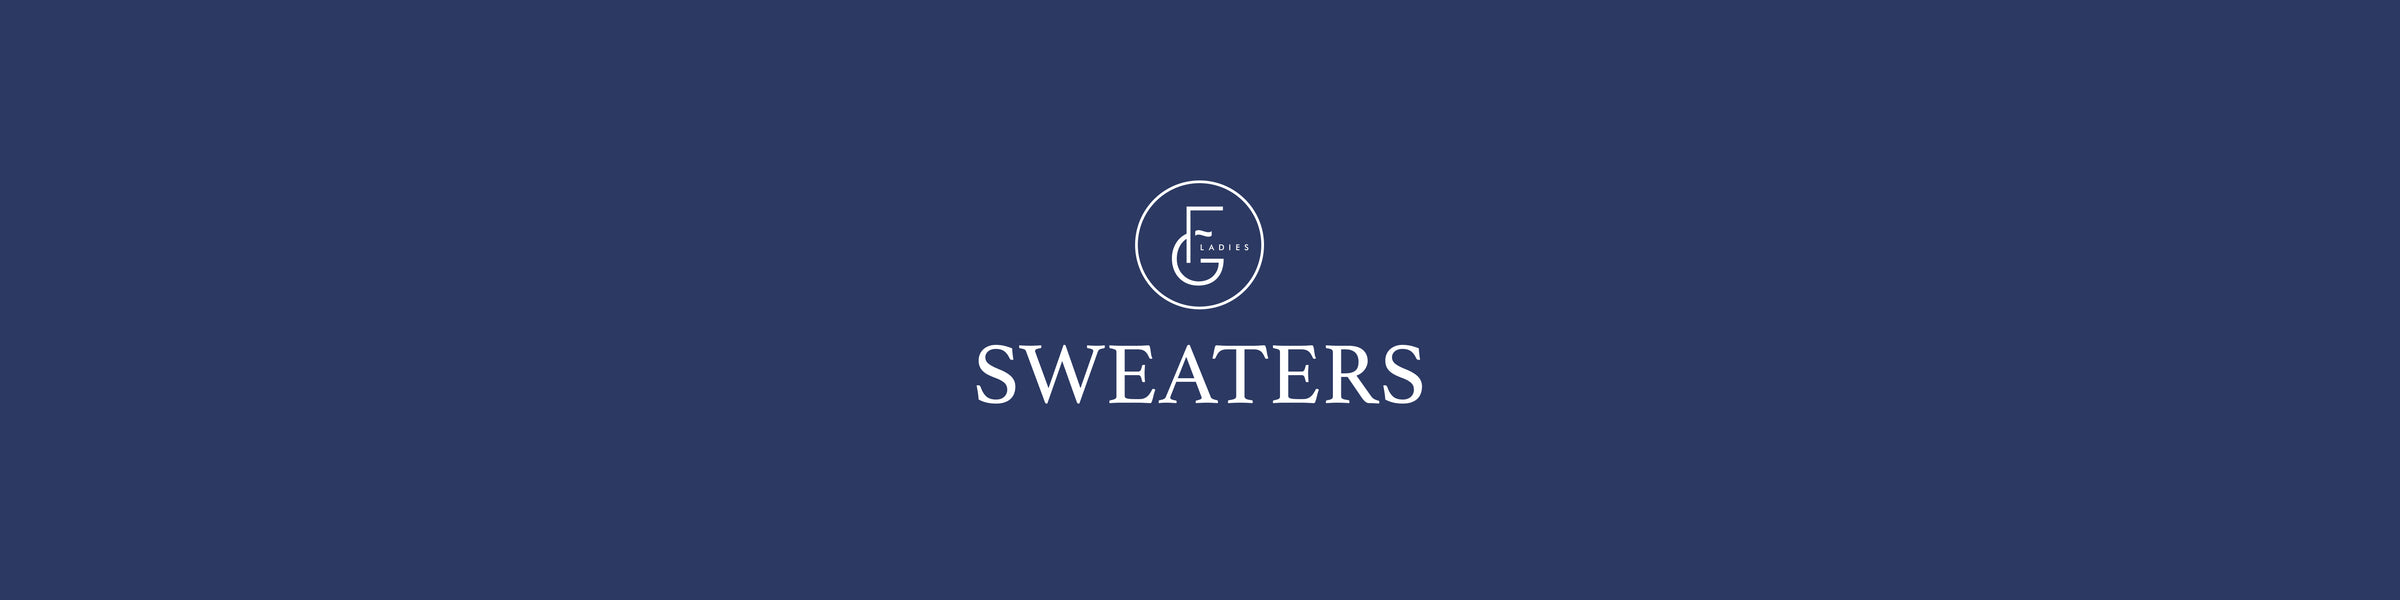 Ladies Sweaters